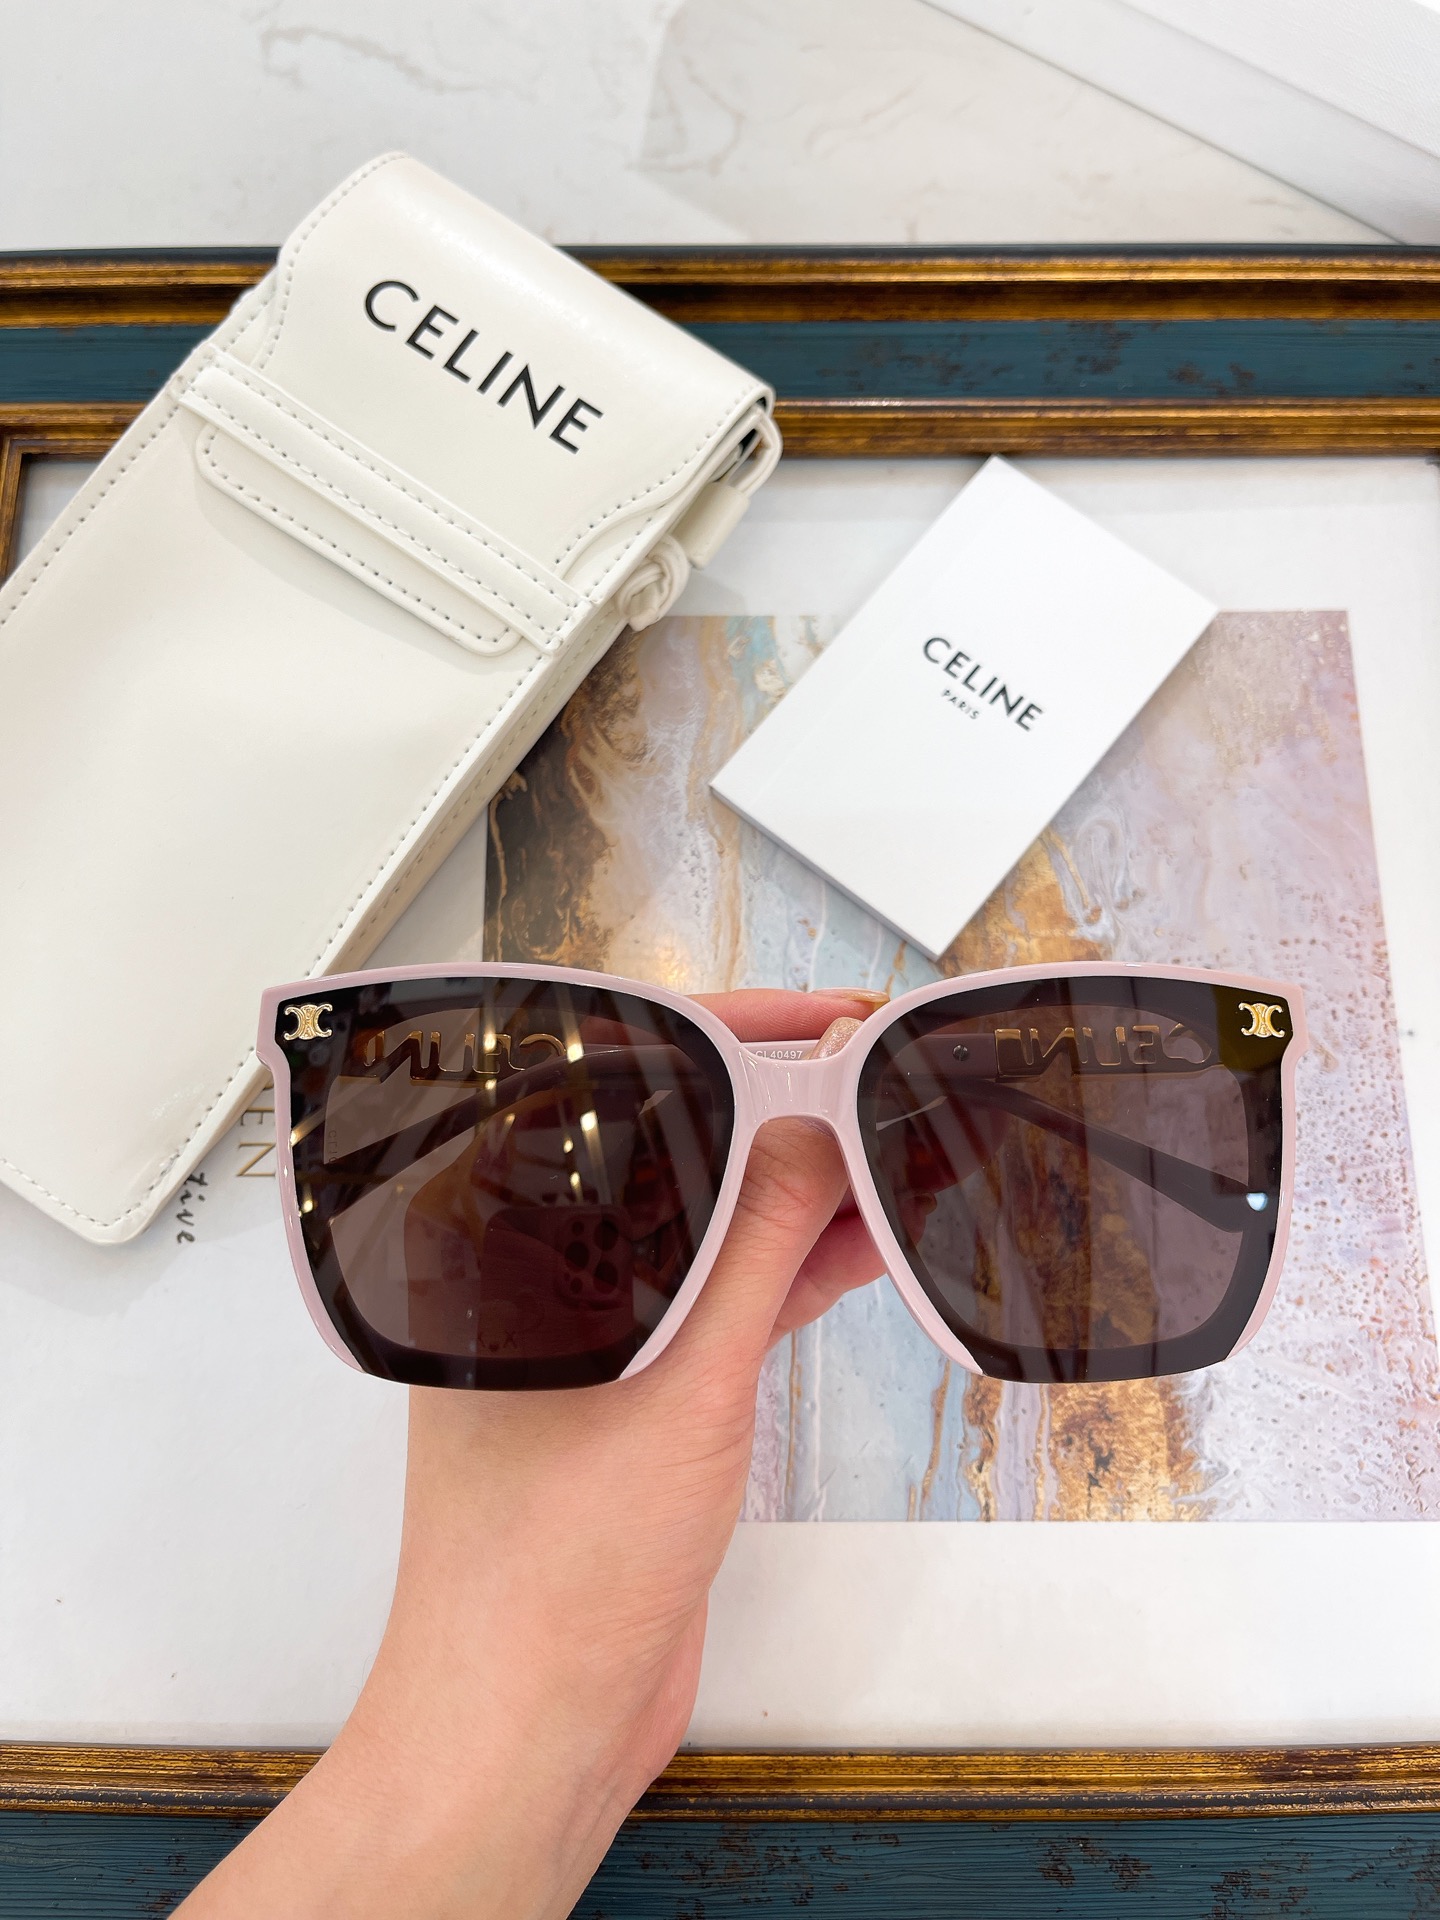 Celine fashionable elegant sunglasses